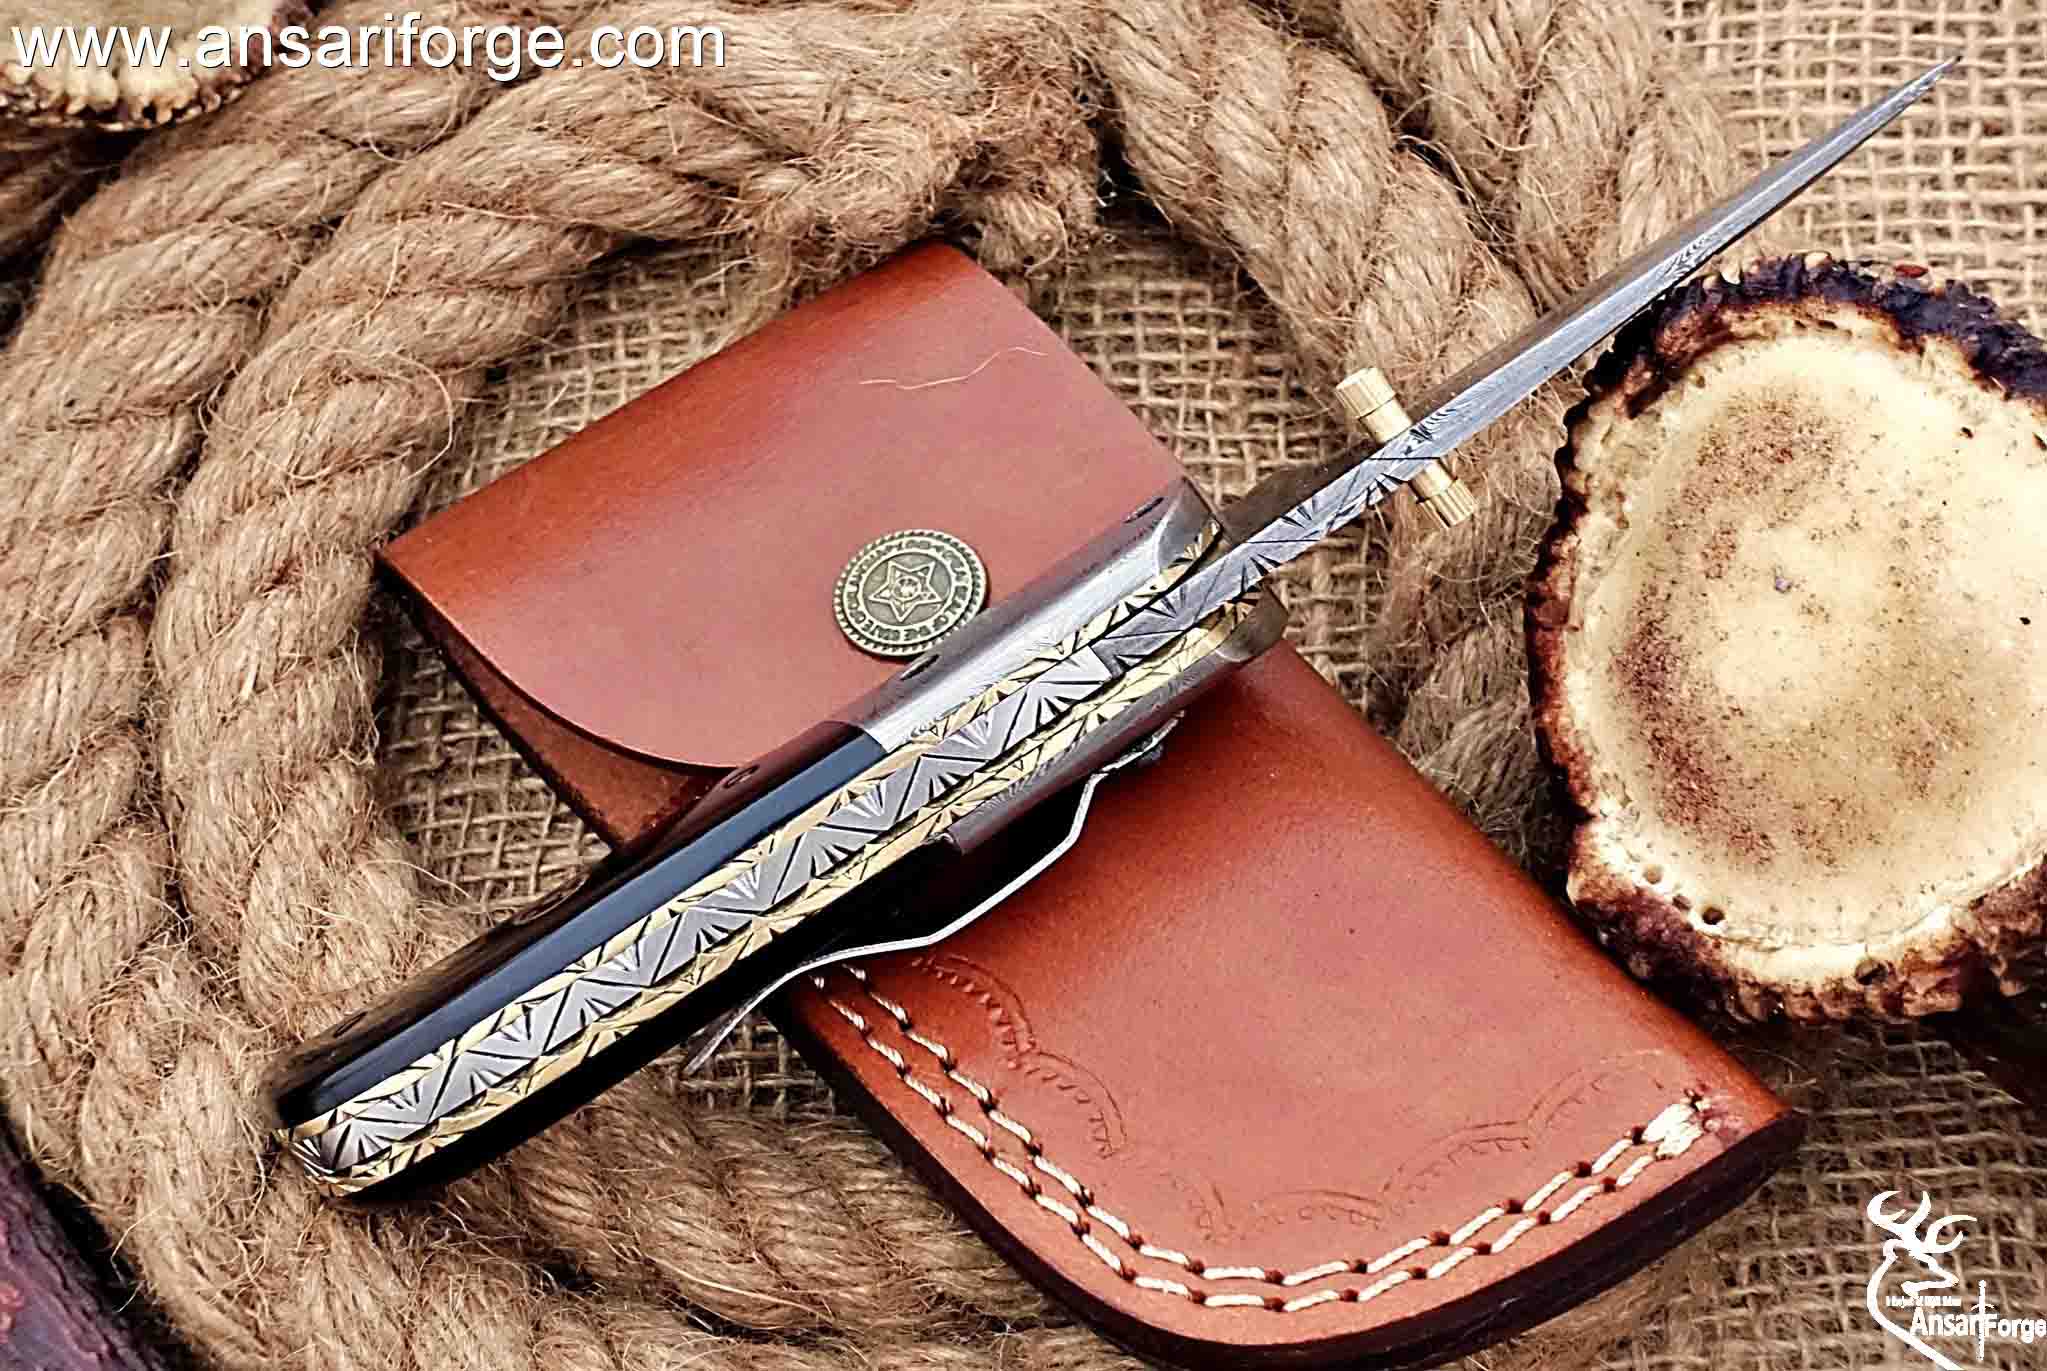  Benkey Damascus Pocket Knife with Clip Leather Sheath